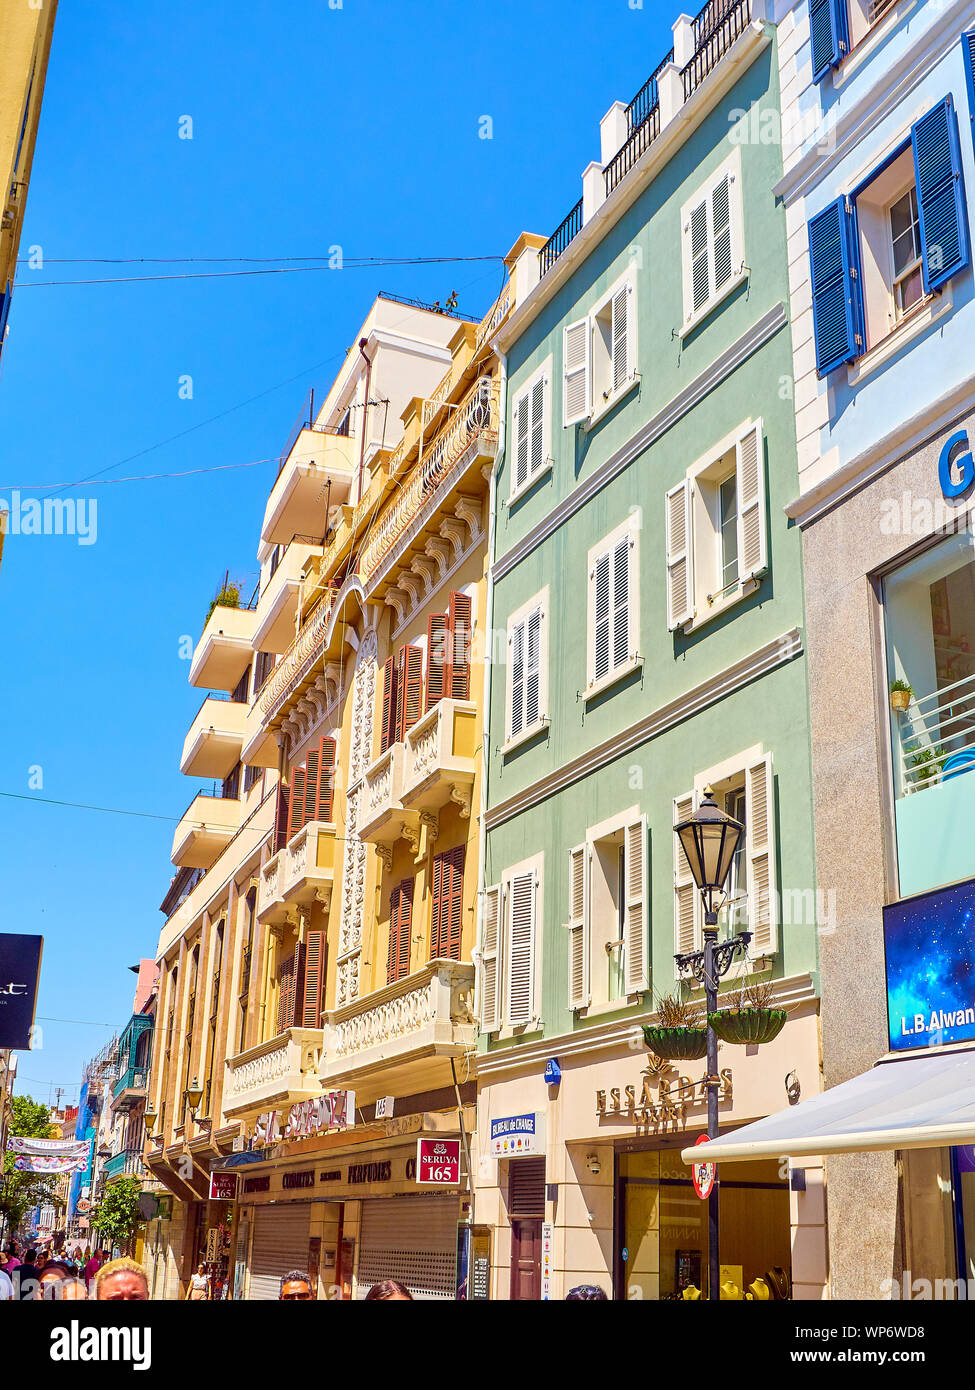 Gibraltar, UK - 29. Juni 2019. Touristen zu Fuß auf einer Hauptstraße im sonnigen Tag. Gibraltar Innenstadt, Britisches Überseegebiet. UK. Stockfoto